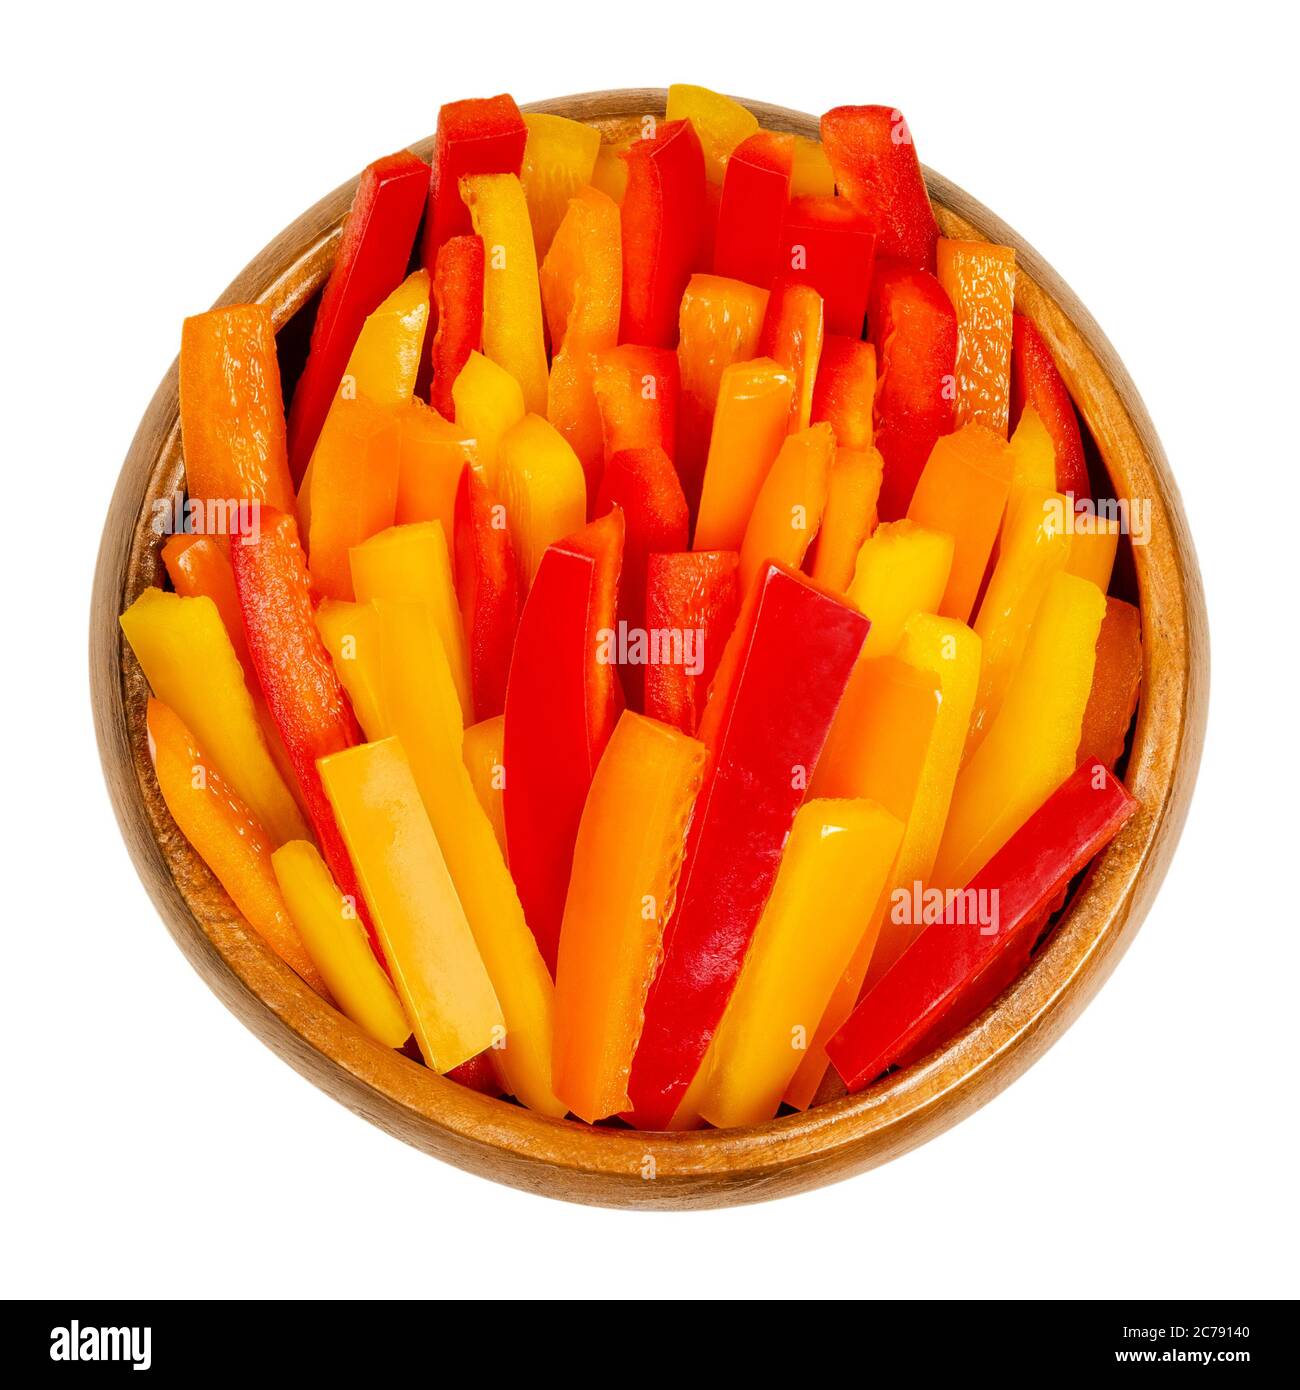 Fette di peperone in un recipiente di legno. Peperone dolce, capsicum o anche chiamato paprika, tagliato a strisce colorate. Frutta fresca gialla, arancione e rossa. Foto Stock